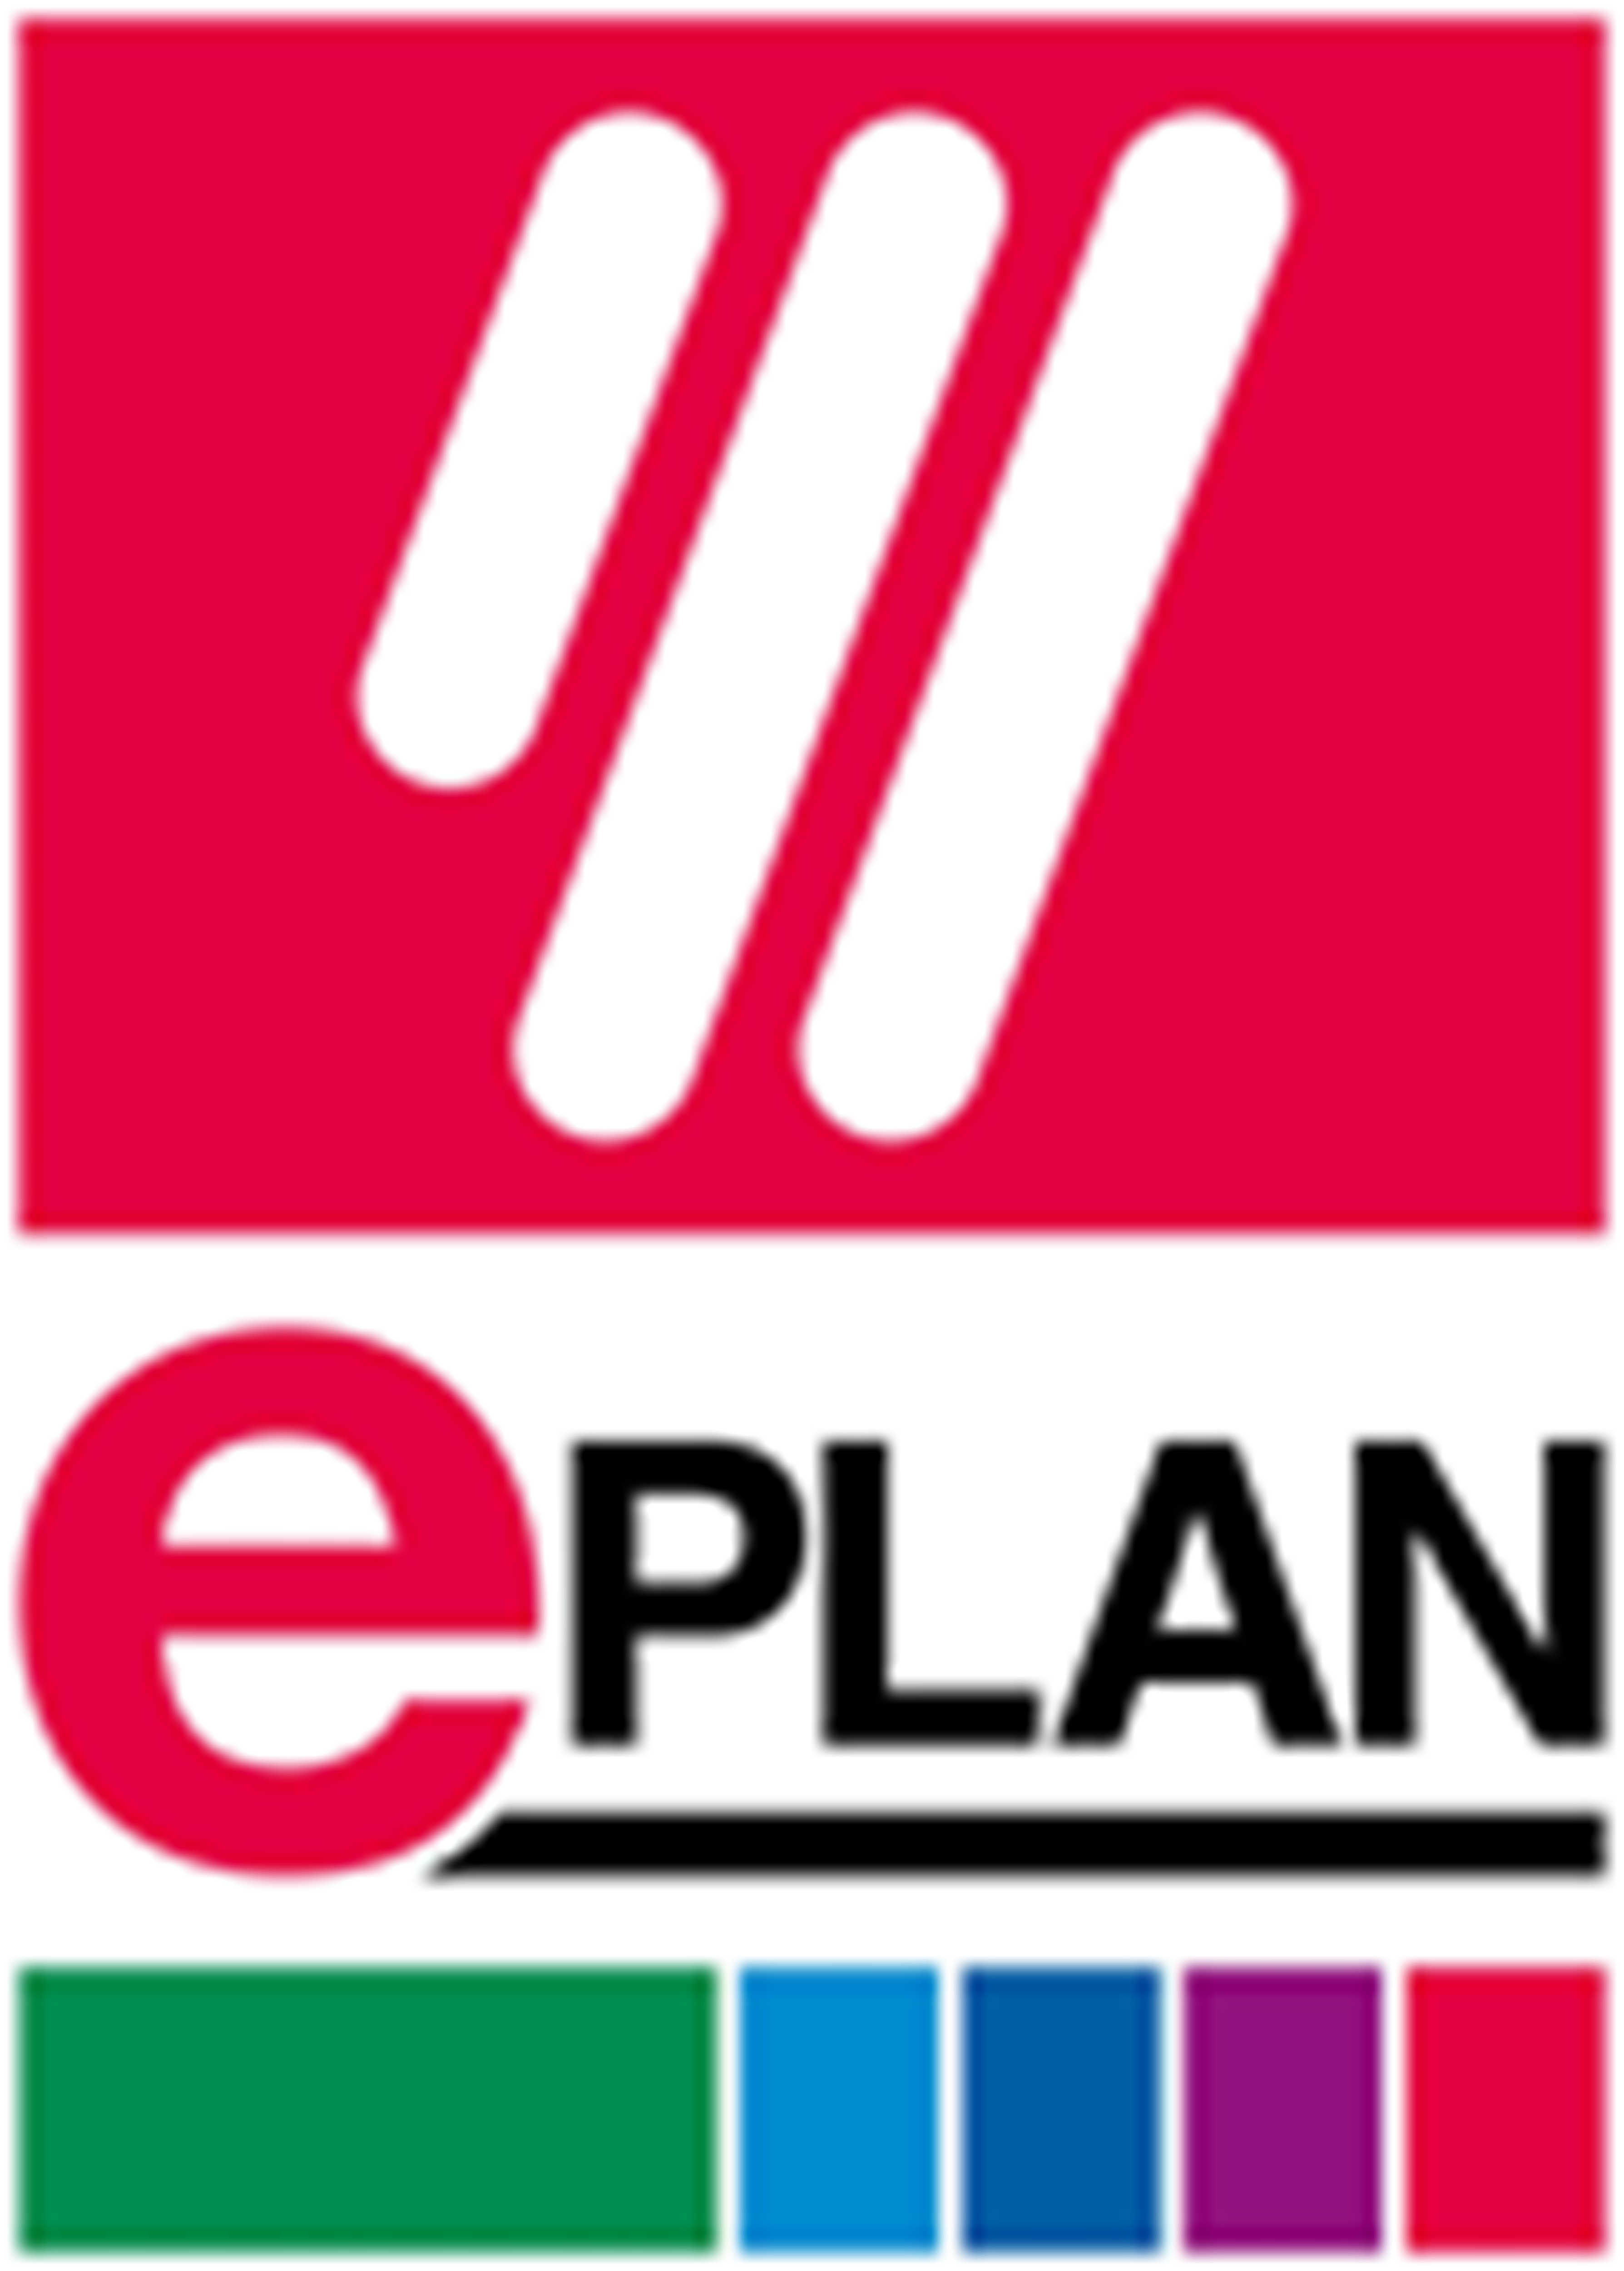 EPLAN GmbH und Co. KG